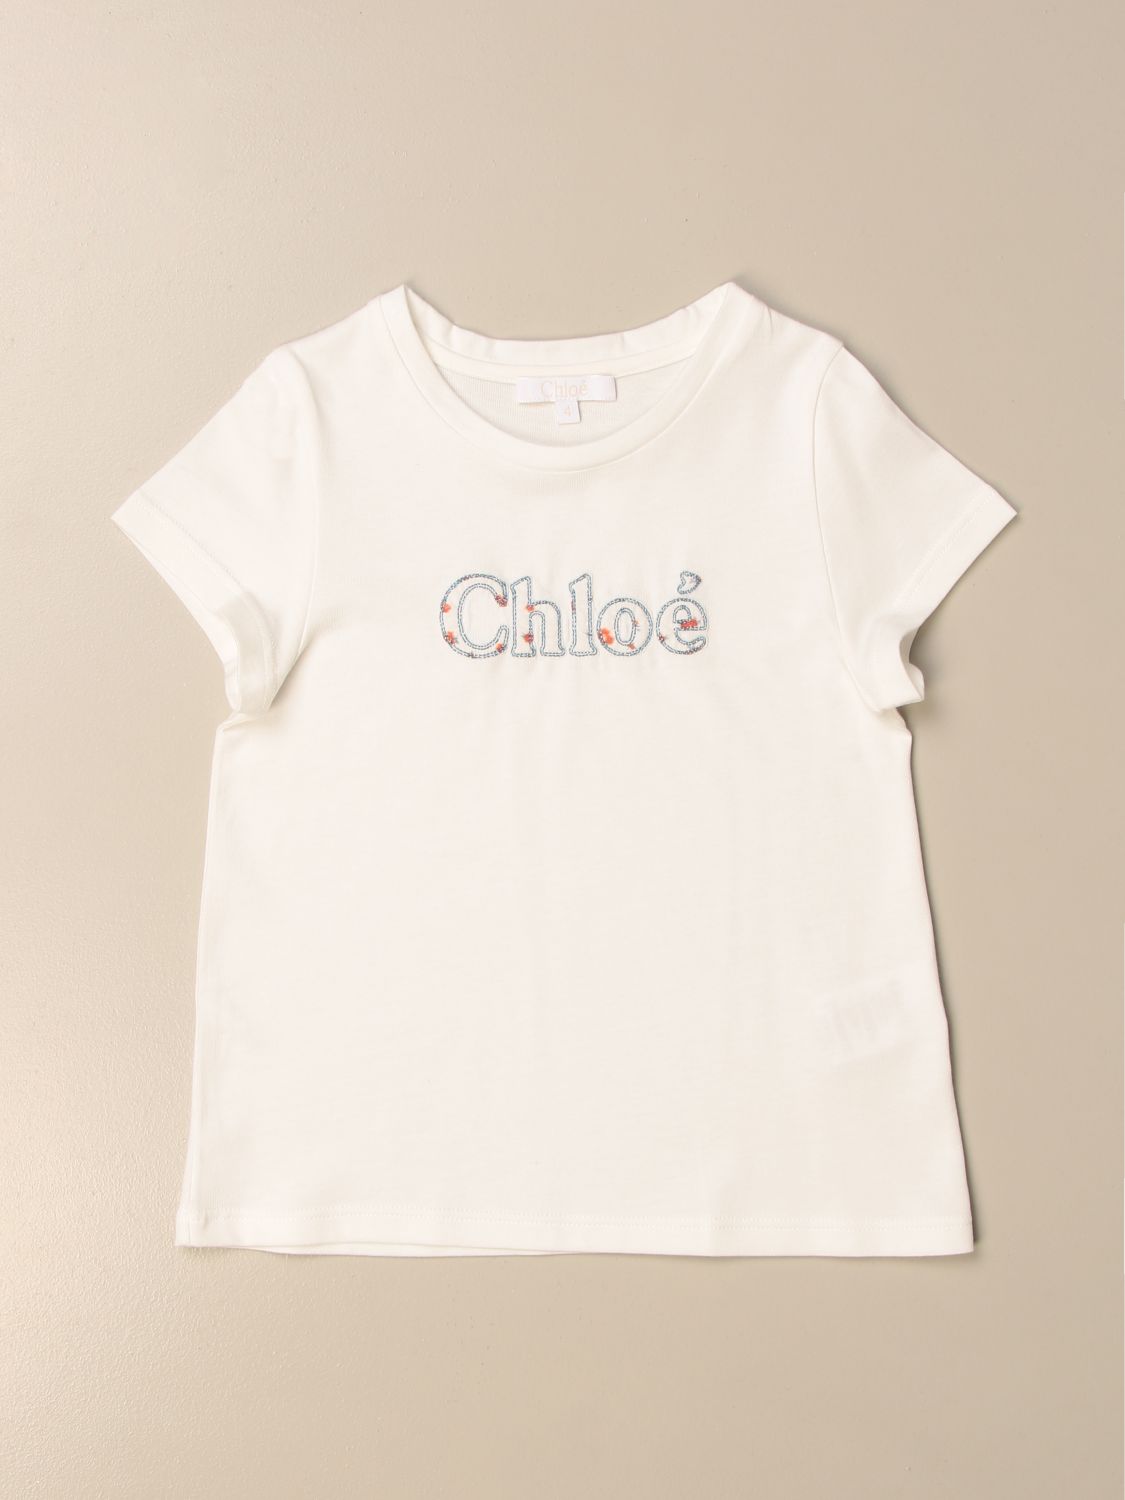 CHLOÉ: T-shirt with logo - White | Chloé t-shirt C15B82 online at ...